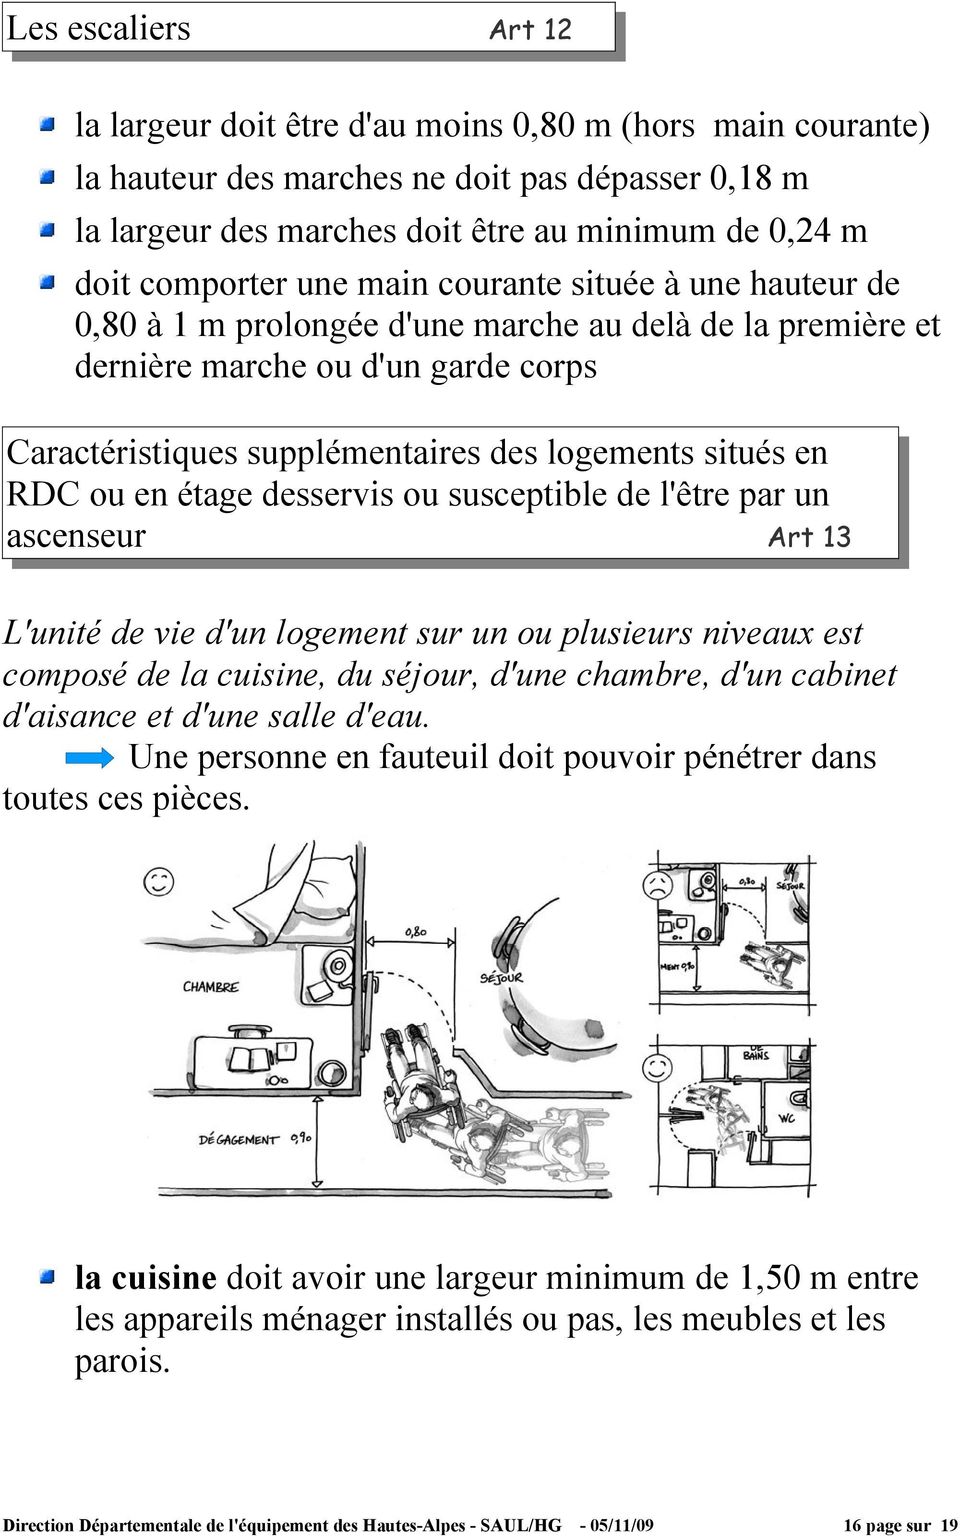 situés en RDC ou en étage desservis ou susceptible de l'être par un ascenseur Art 13 L'unité de vie d'un logement sur un ou plusieurs niveaux est composé de la cuisine, du séjour, d'une chambre, d'un